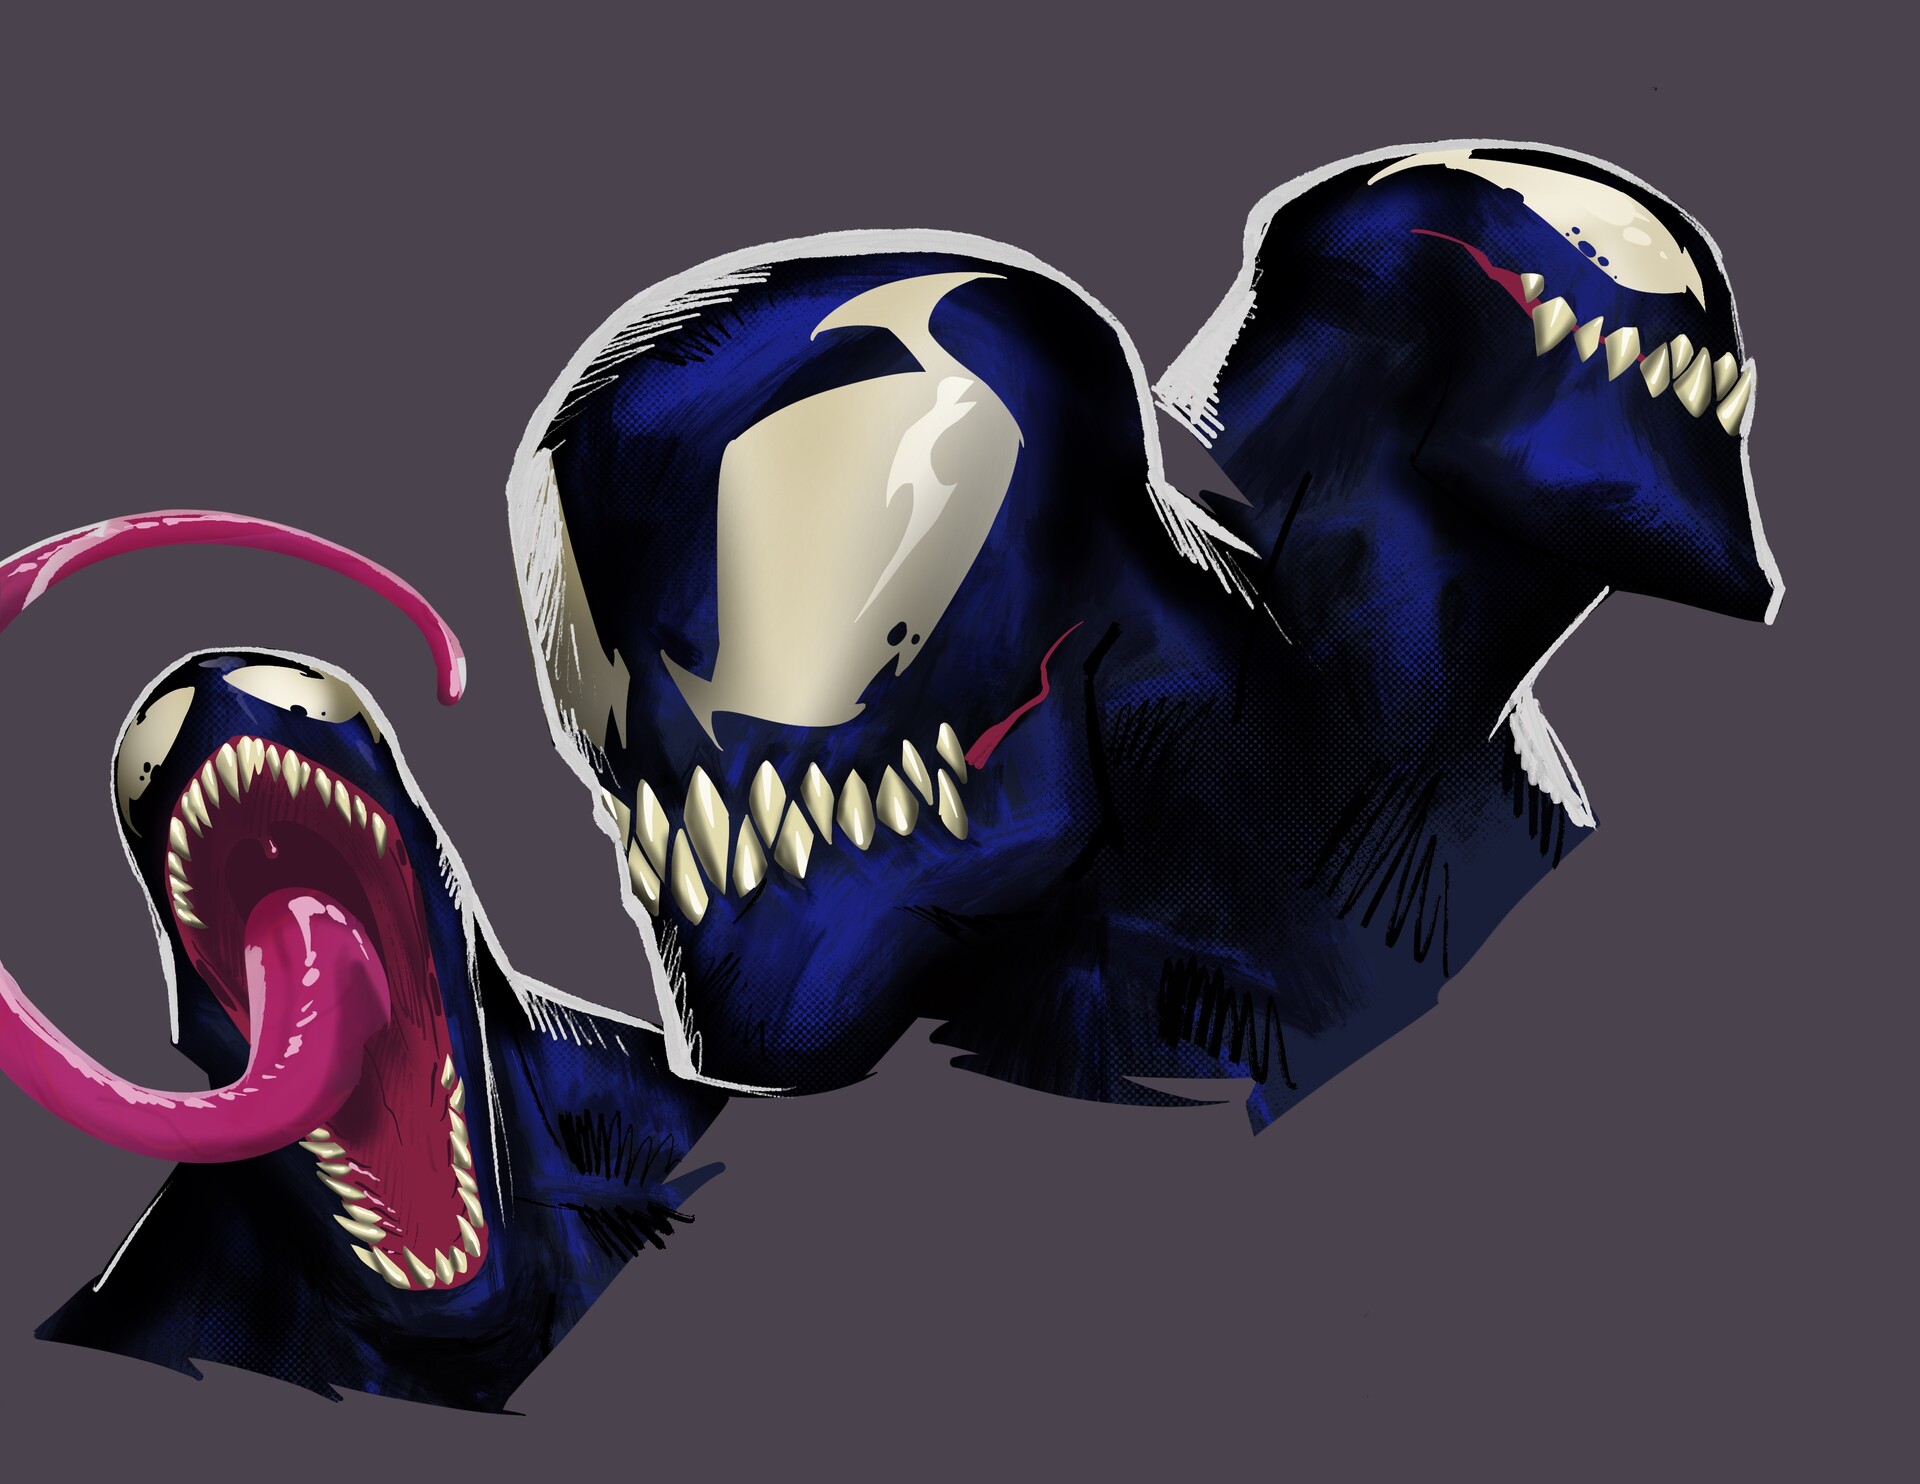 Venom art - w i p